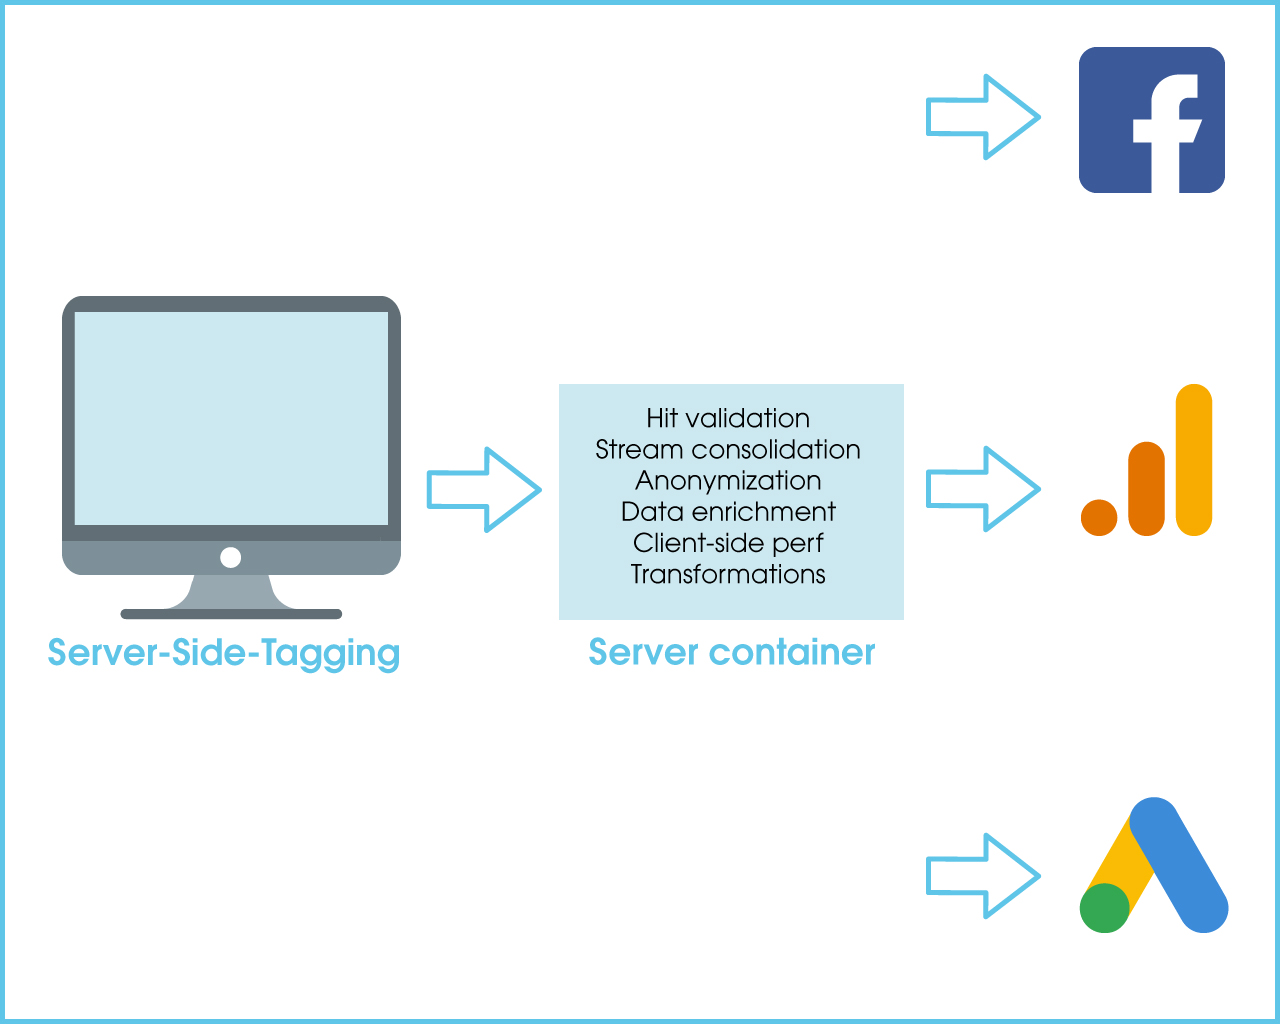 Das Bild zeigt die Funktionen von Server-Side-Tagging. Diese sind z. B. Hit validation, Stream consolidation usw.